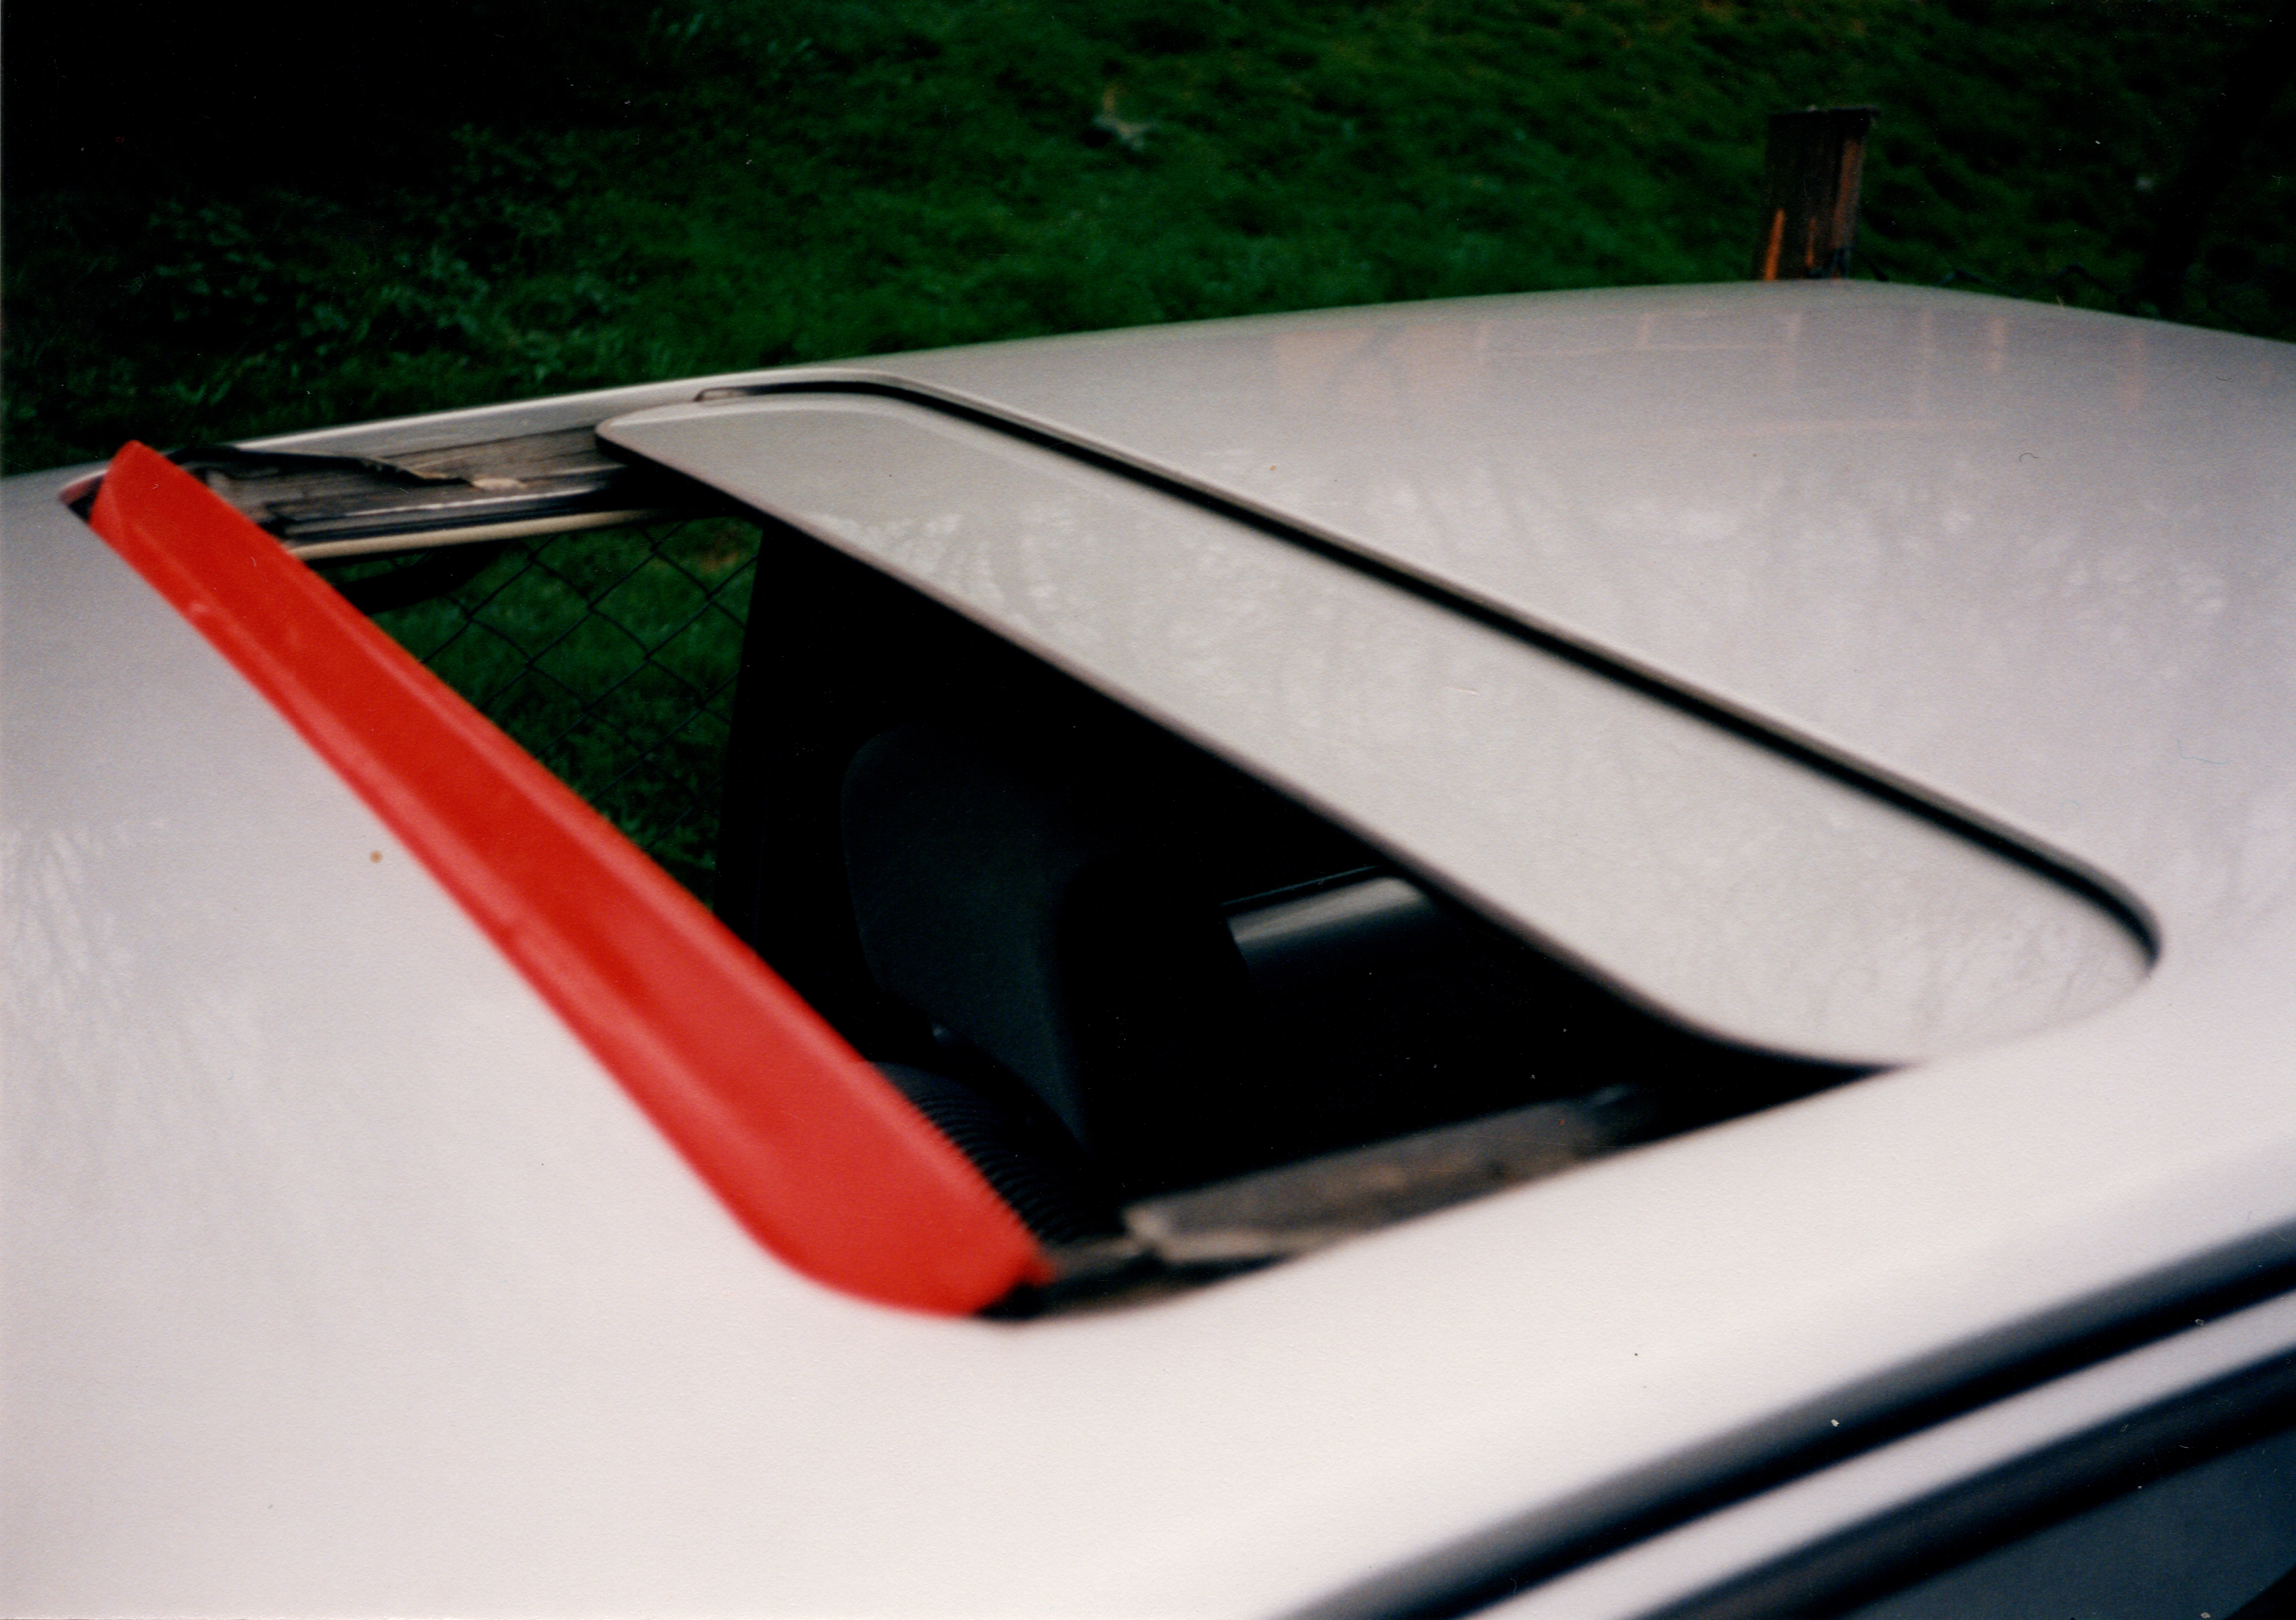 Bild vom Schiebedach eines VW Polo Coupe mit rot lackierter Leiste